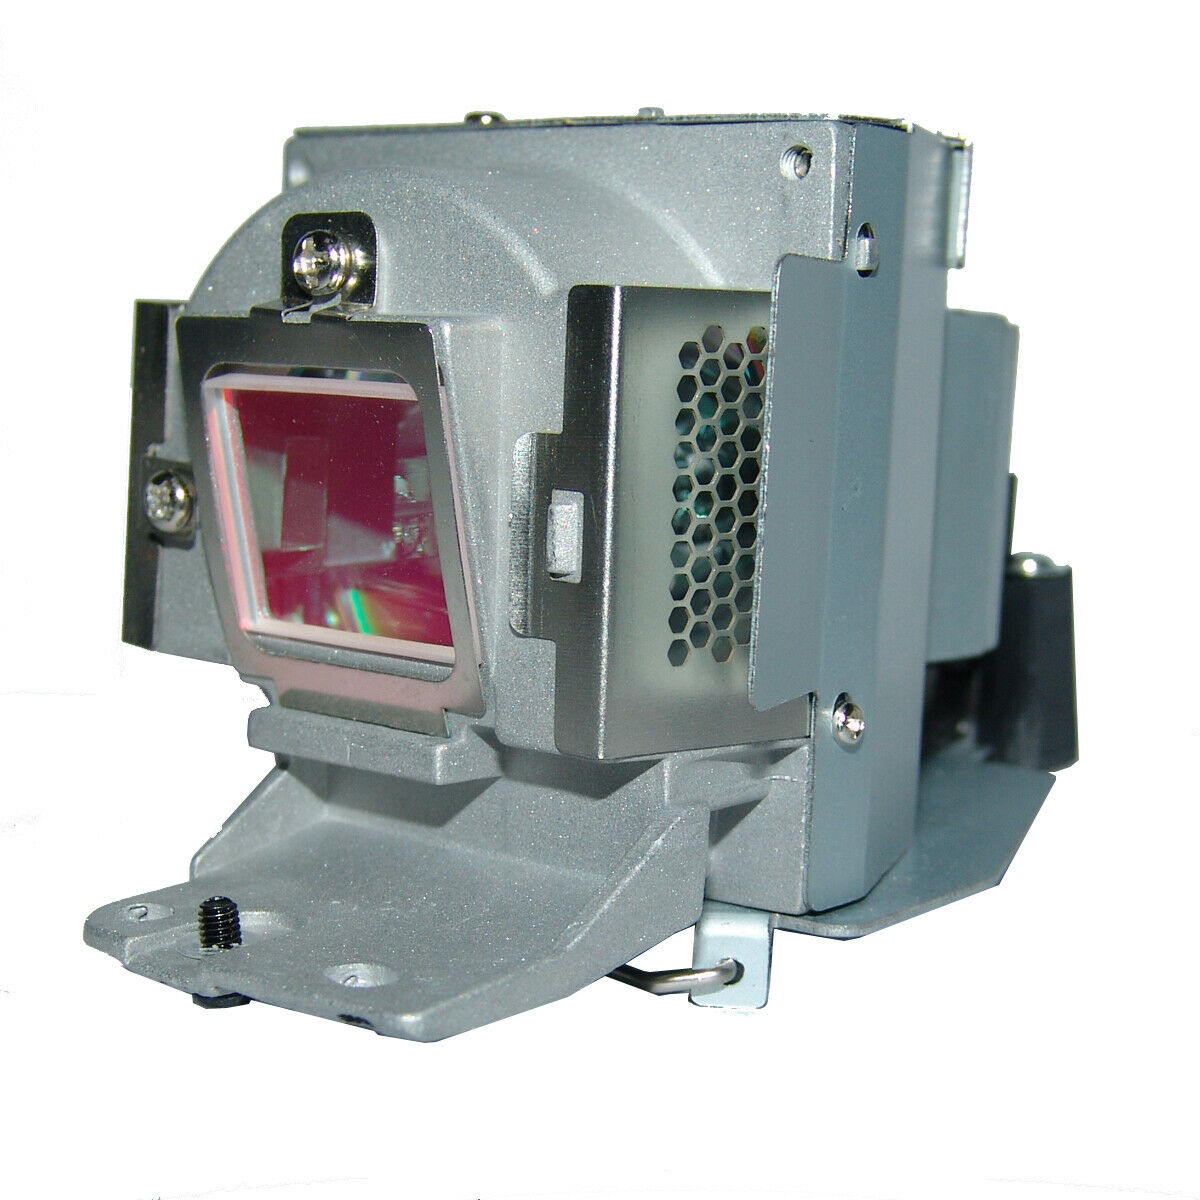 BENQ projektor lampe kompatibel 5J. J9W05.001 Projektor Lampe für BENQ MW665 projektoren